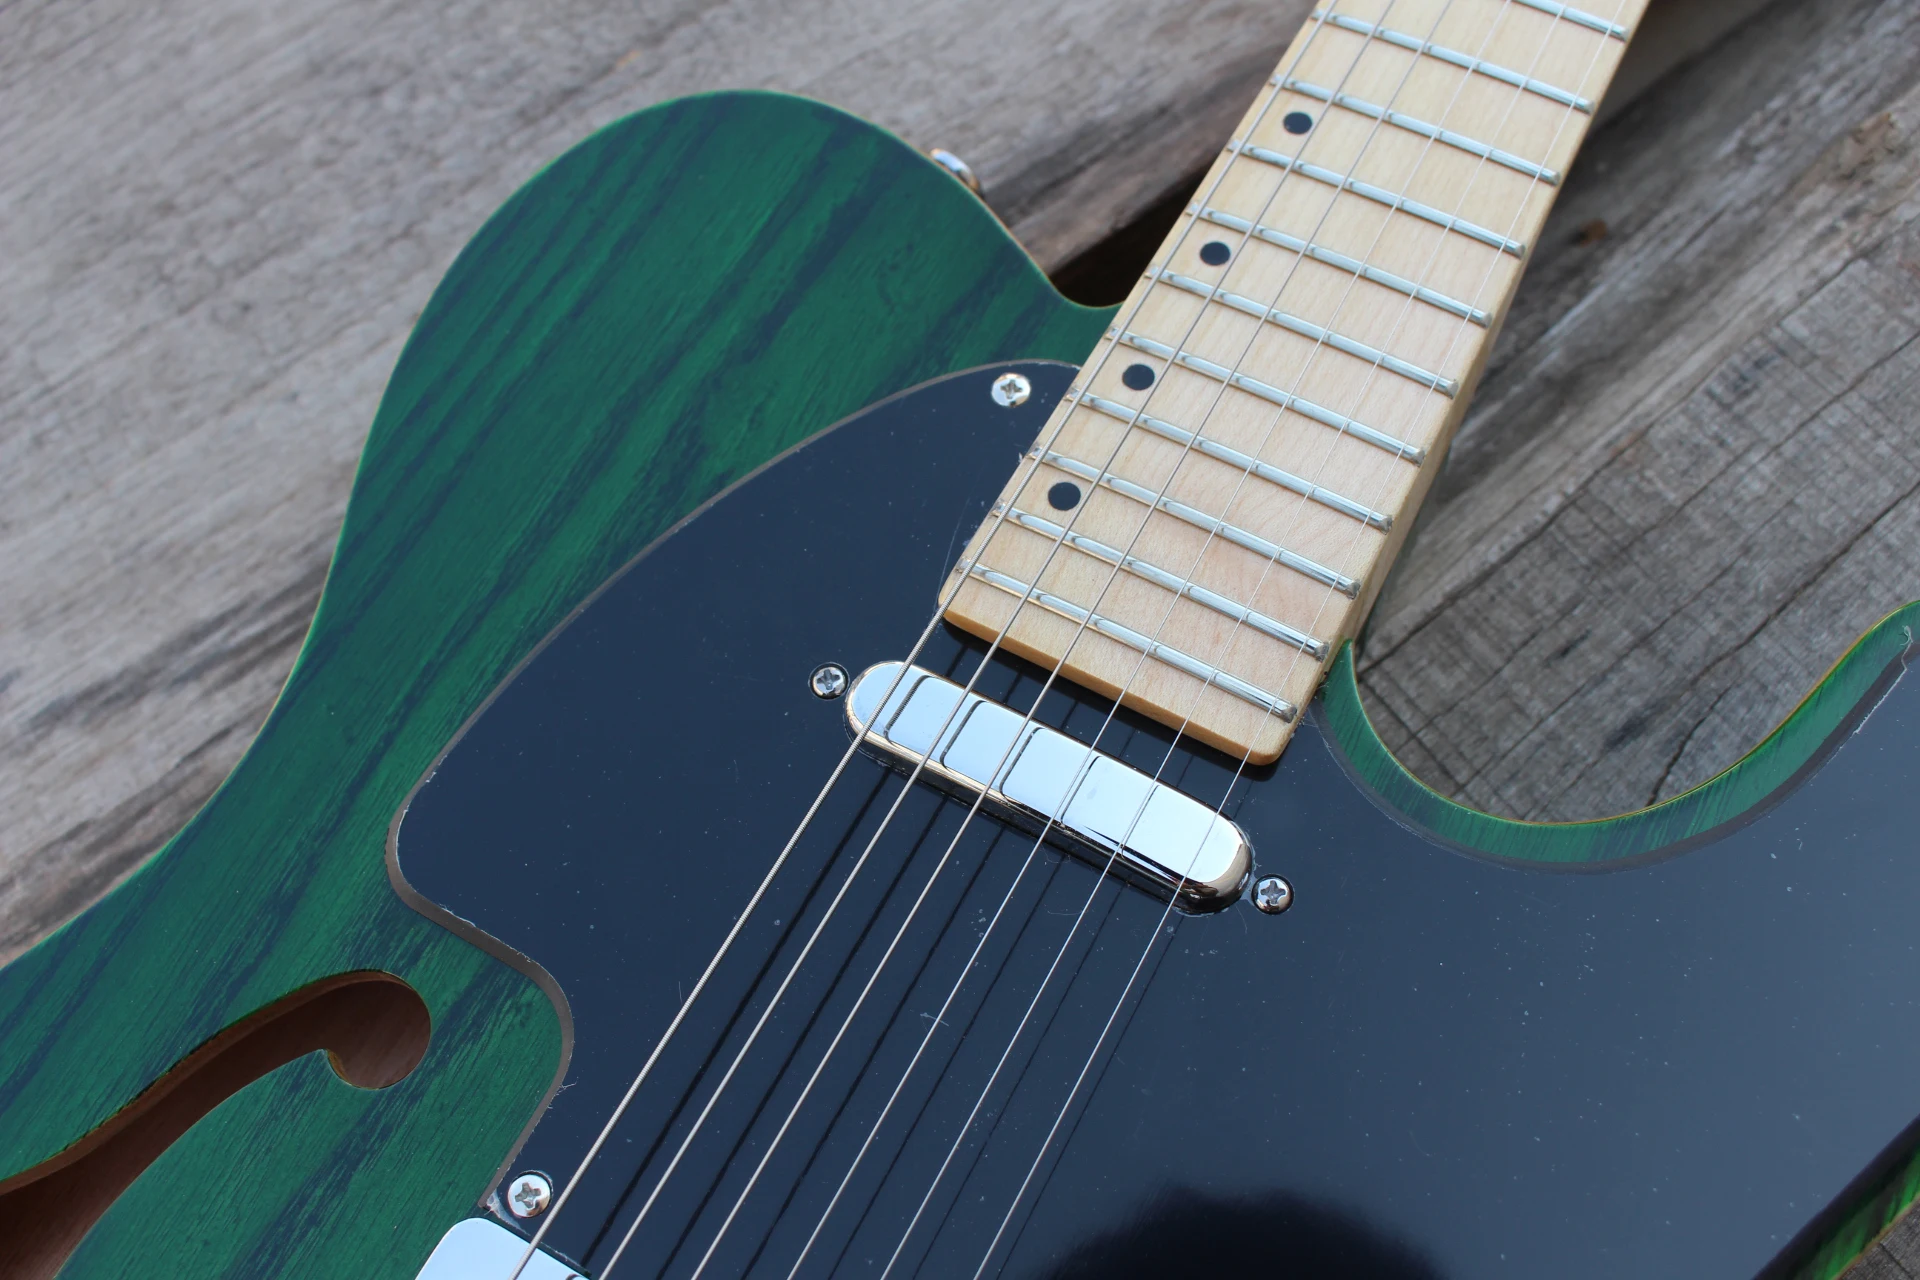 Группа Acepro F отверстие электрогитары с твердой пепельницей, высокое качество прозрачный зеленый/синий/коричневый цвет гитары ra